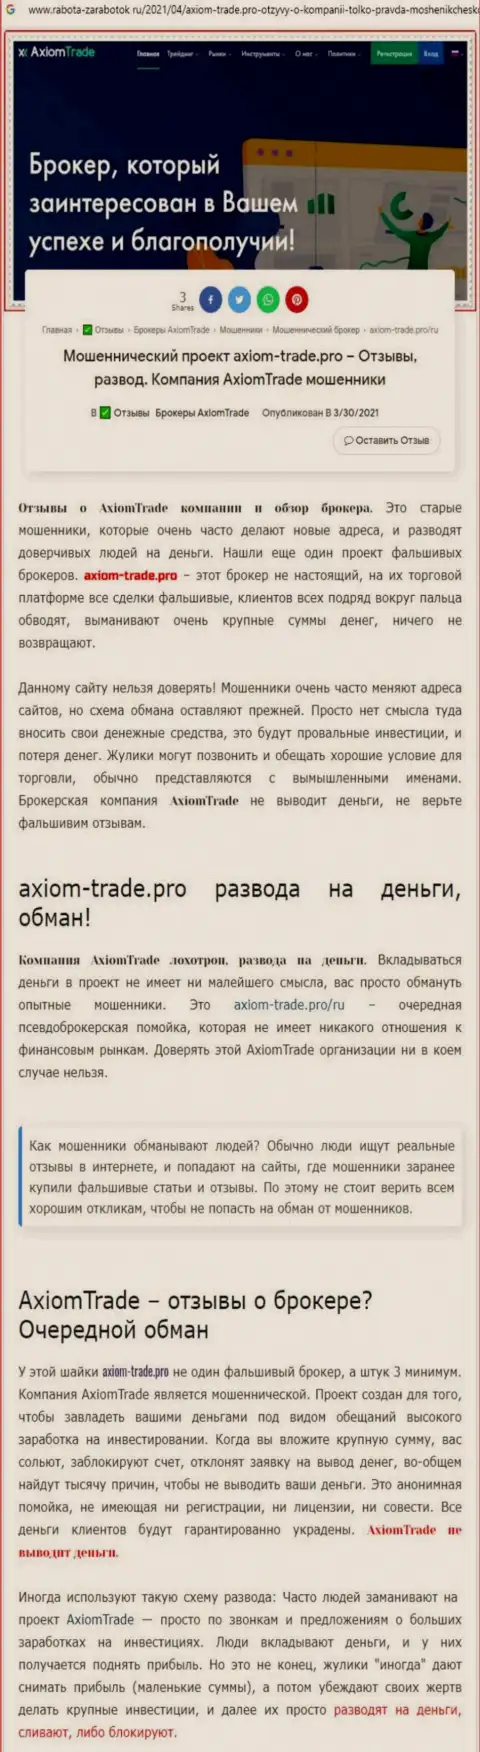 В Axiom-Trade Pro дурачат - доказательства противозаконных манипуляций (обзор мошеннических комбинаций организации)